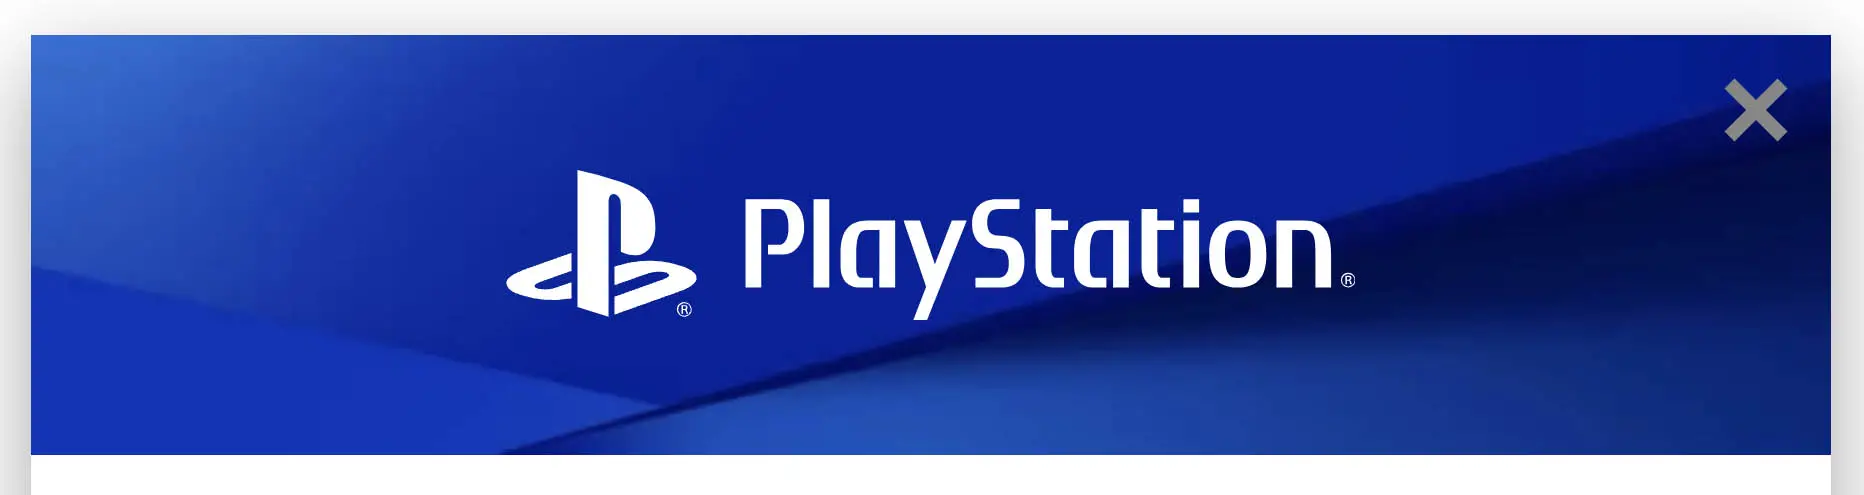 PlayStation-website-logo-wide